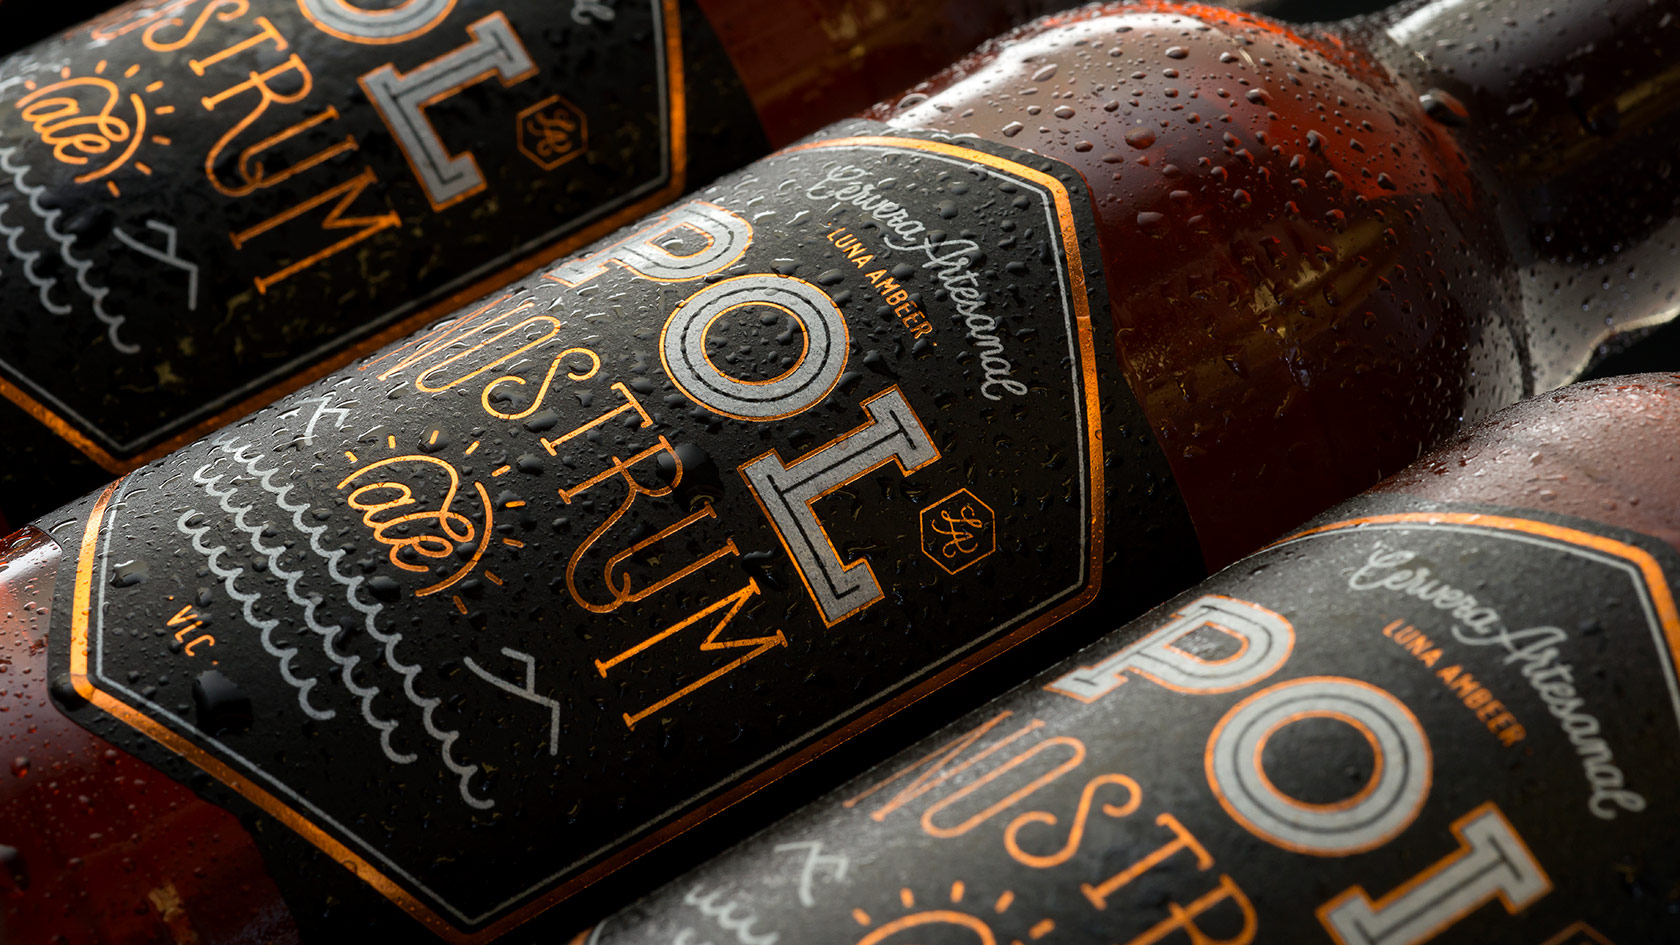 Diseño de logotipo cerveza Pol Nostrum Ale - Diseño de packaging cerveza - Diseño de lettering - Diseño de etiquetas para botella de bebida - Estudio de diseño Valencia Pixelarte